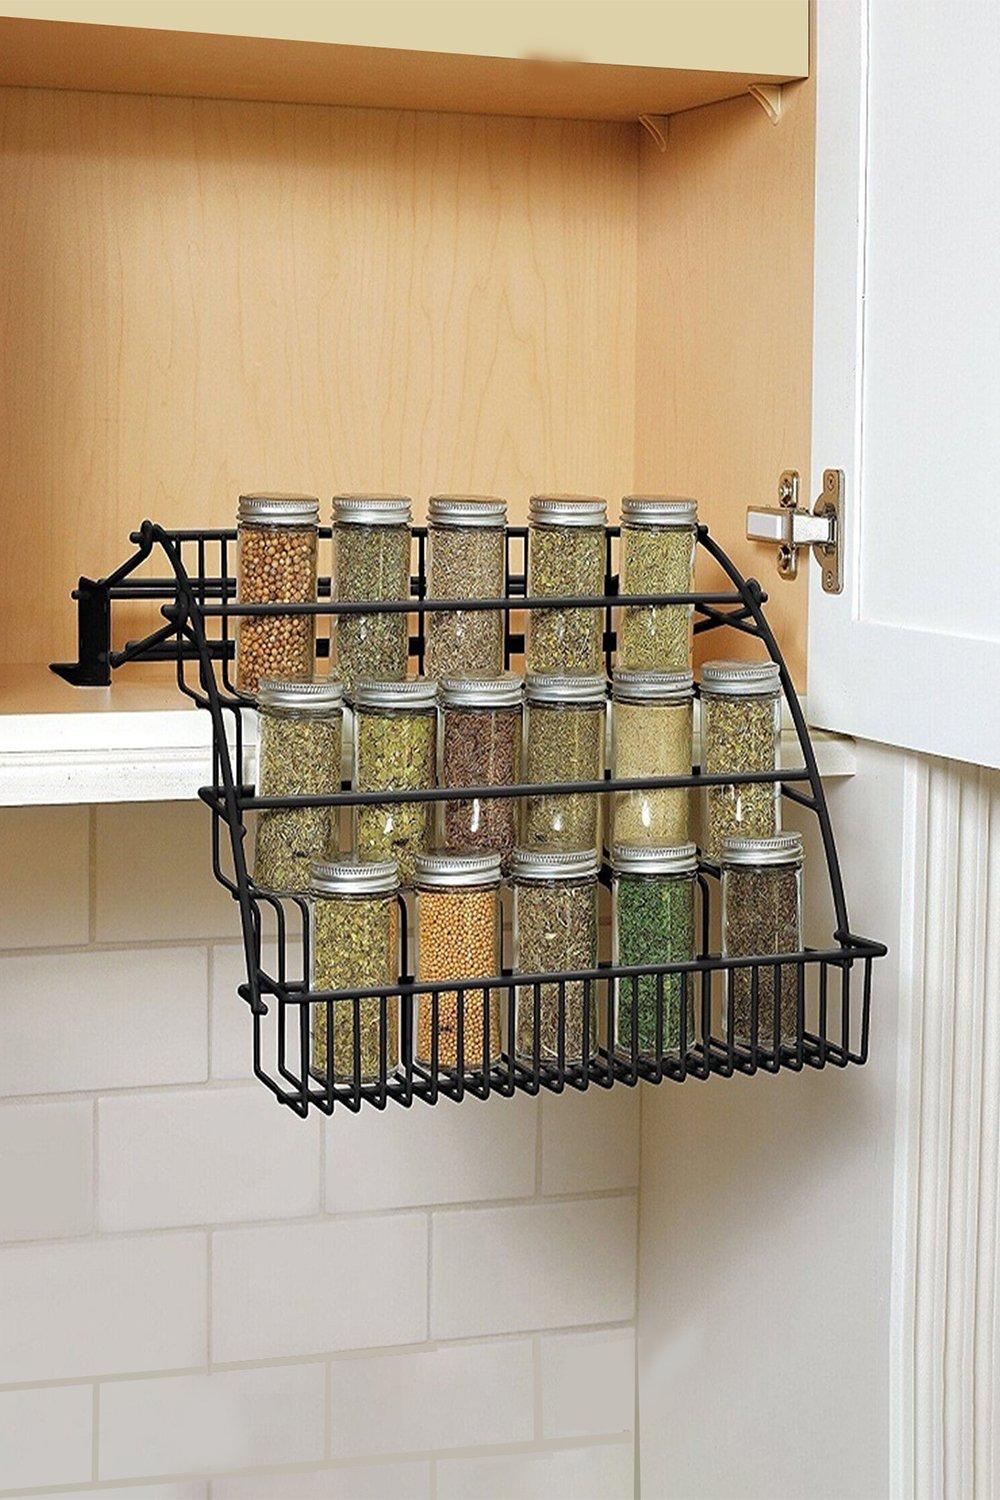 3 Tier Kitchen Pull Down Spice Rack Storage Shelf Organizer for Cabinet